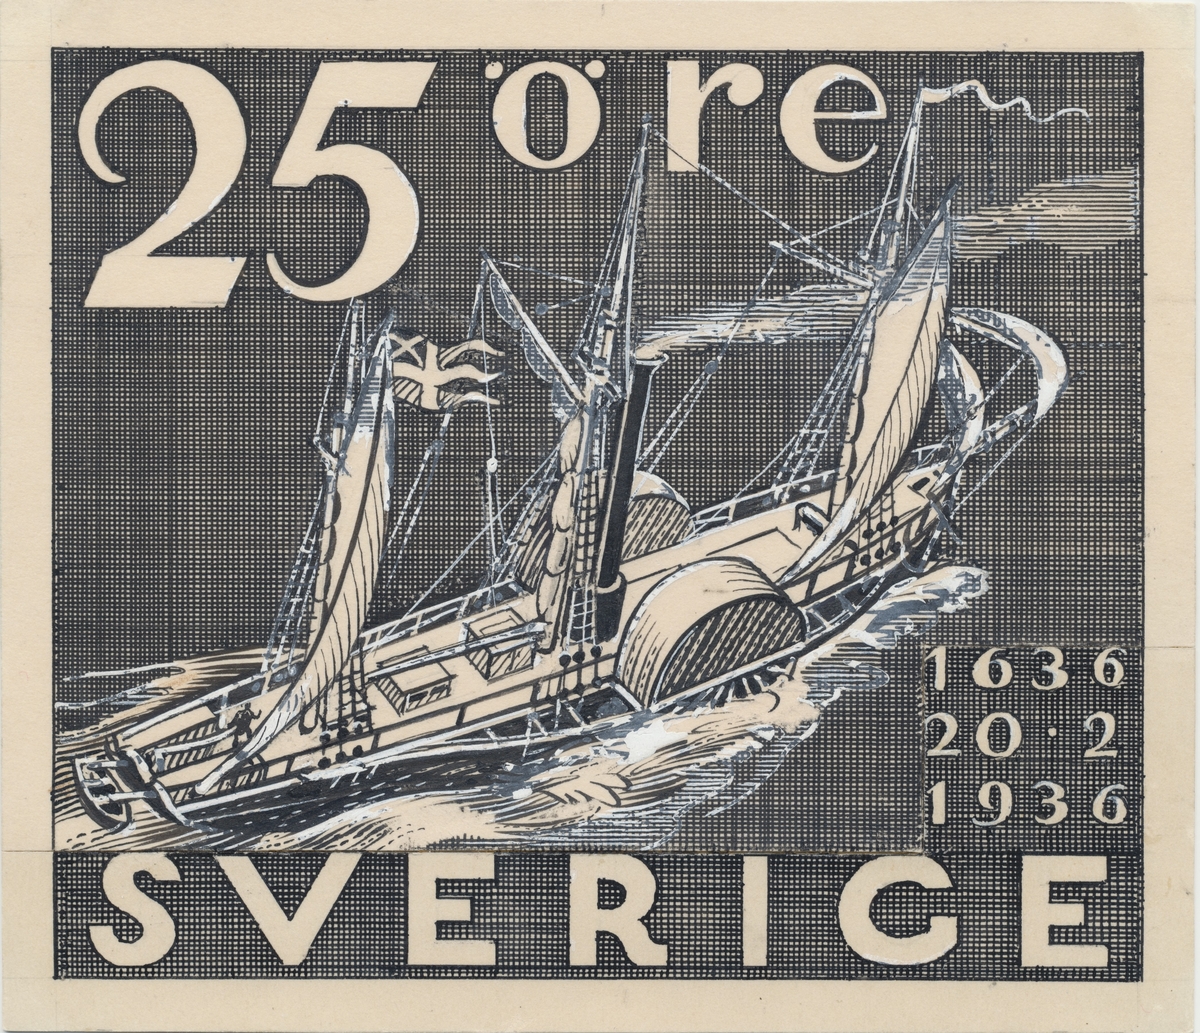 Förlagor från år 1936 som verkar som underlag till frimärket Postverket 300 år.